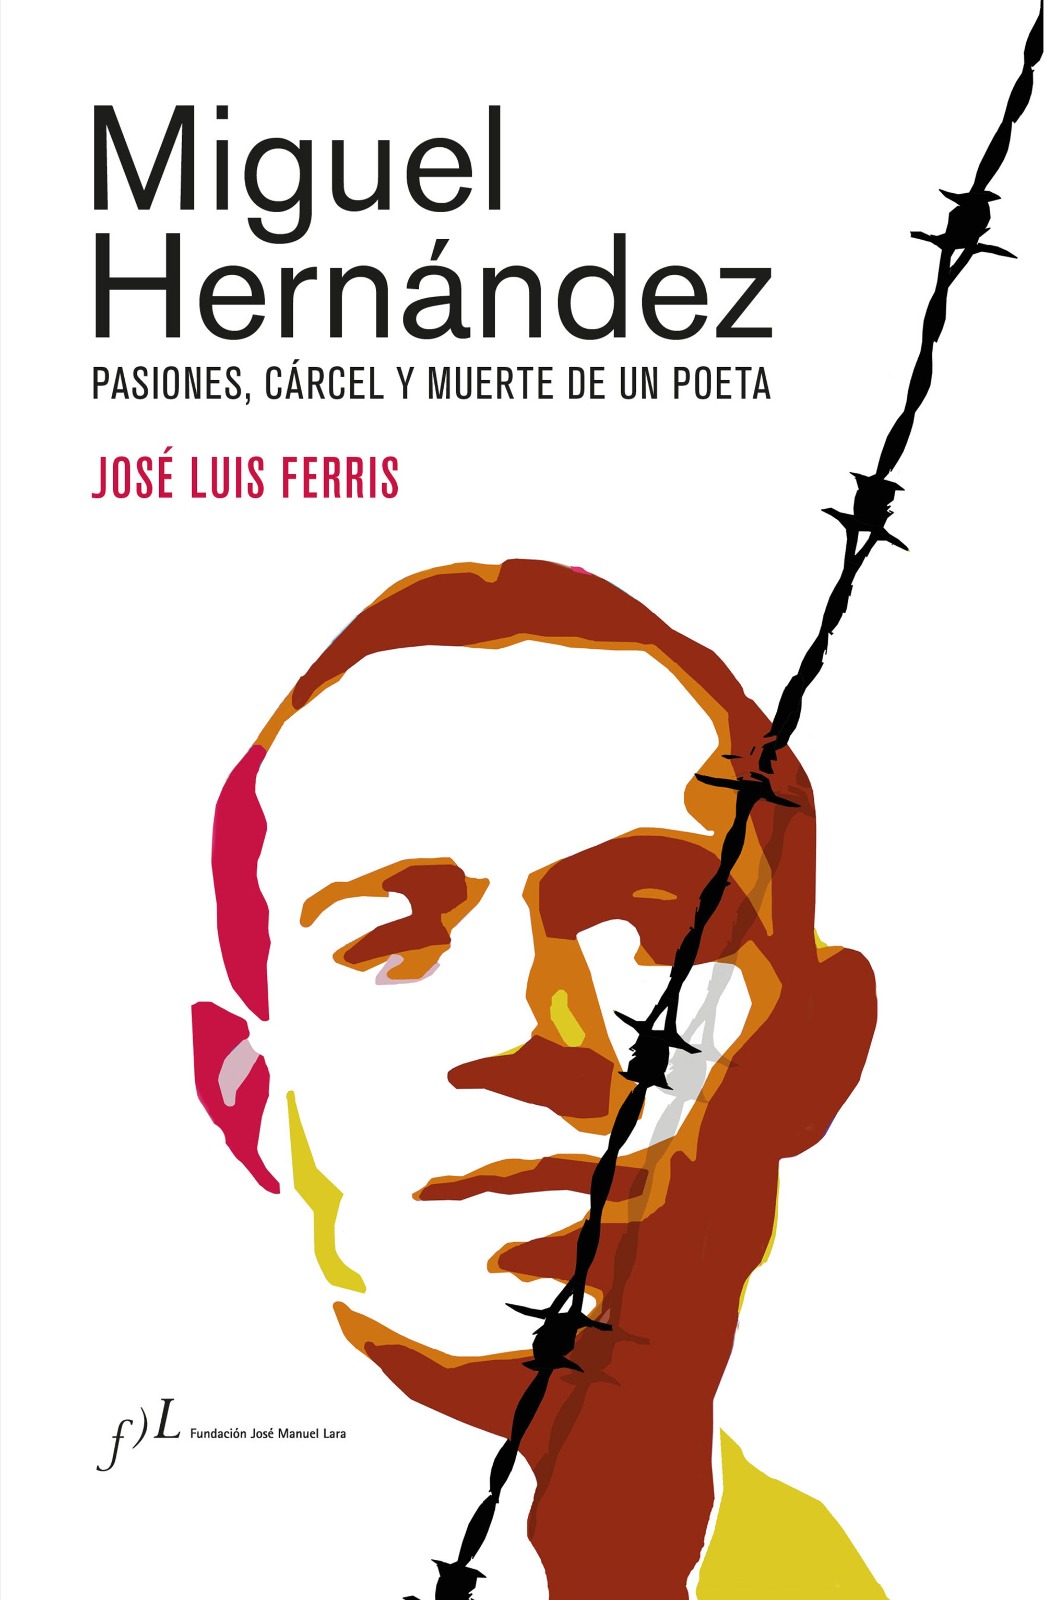 Portada del libro 'Miguel Hernández: pasiones, cárcel y muerte de un poeta' del investigador y filólogo, José Luis Ferris